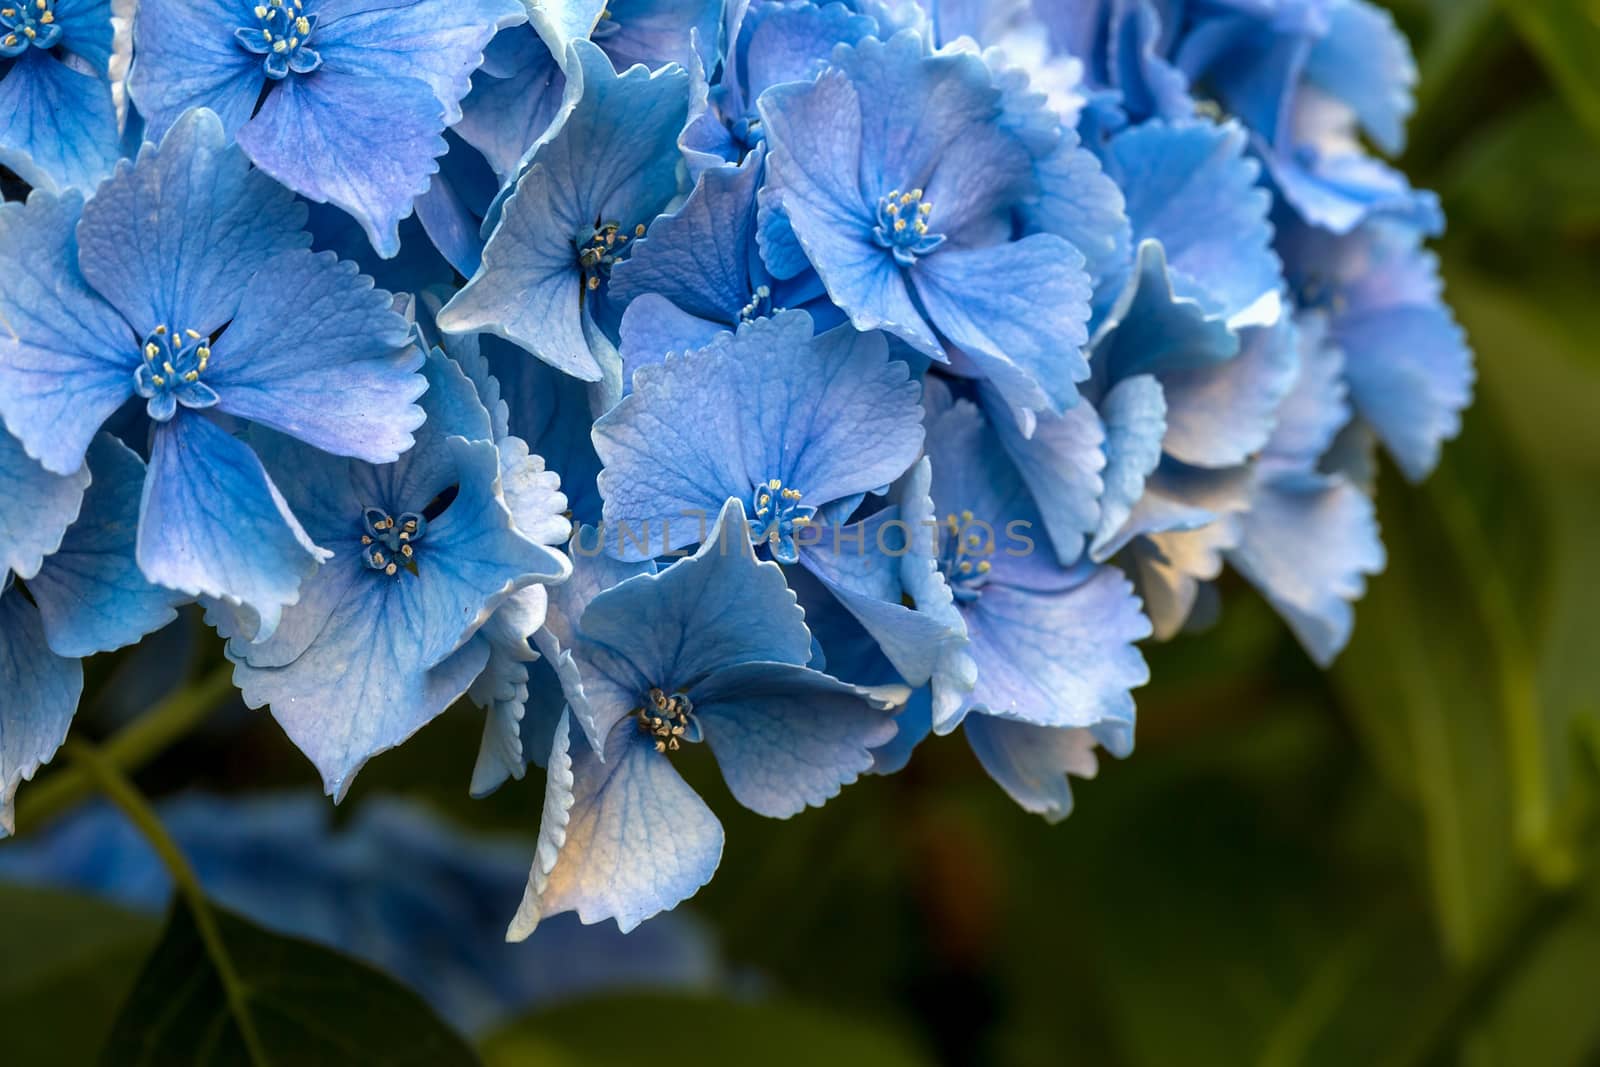 Blue hydrangea flower in bloom closeup macro